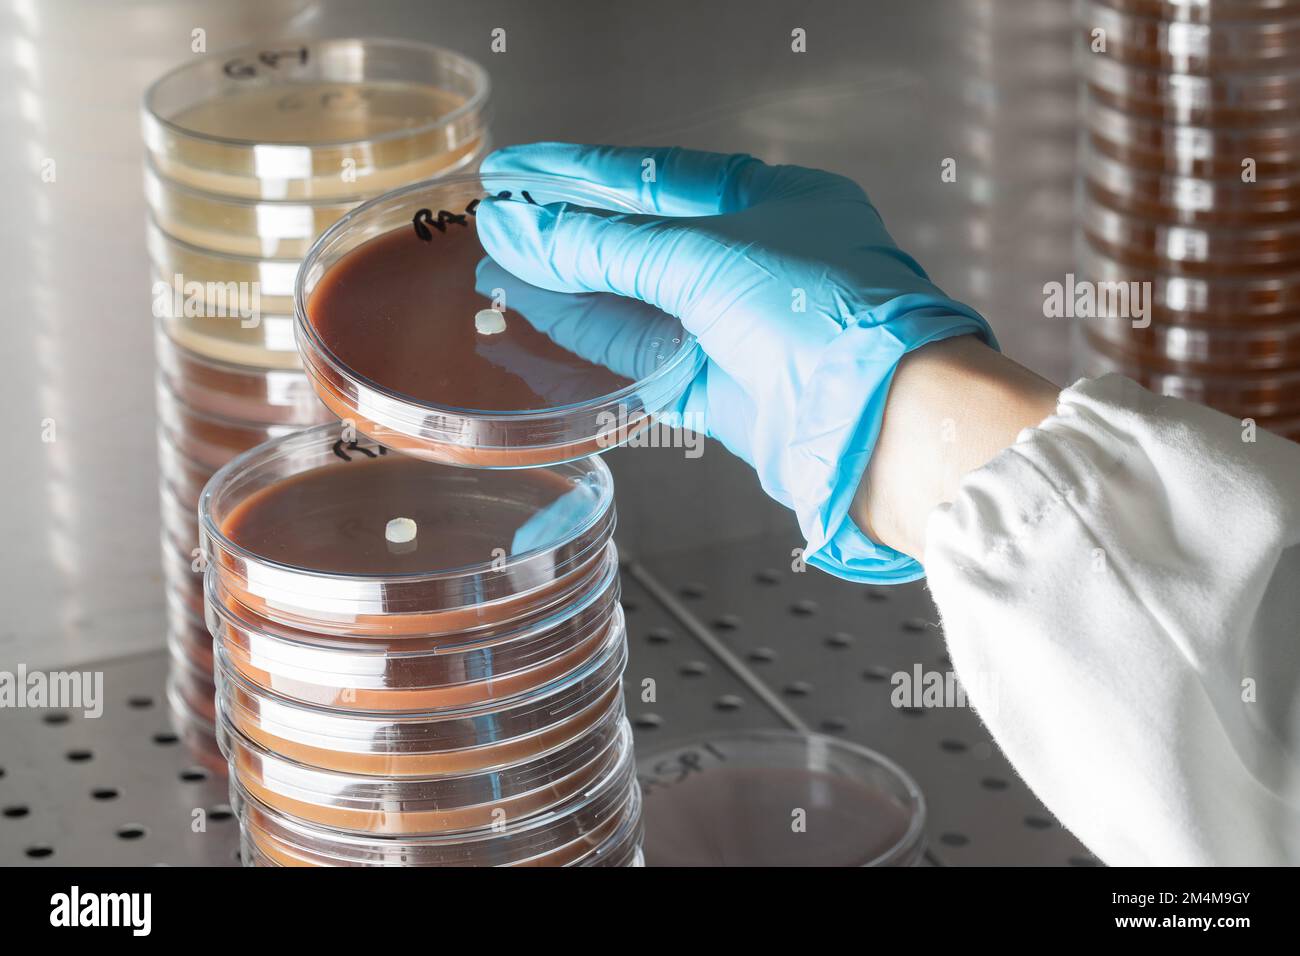 Scienziato che lavora in ambiente asettico mentre maneggia le capsule di Petri impilandole sotto il cappuccio sterile, concetto di ricerca scientifica sulla salute umana Foto Stock